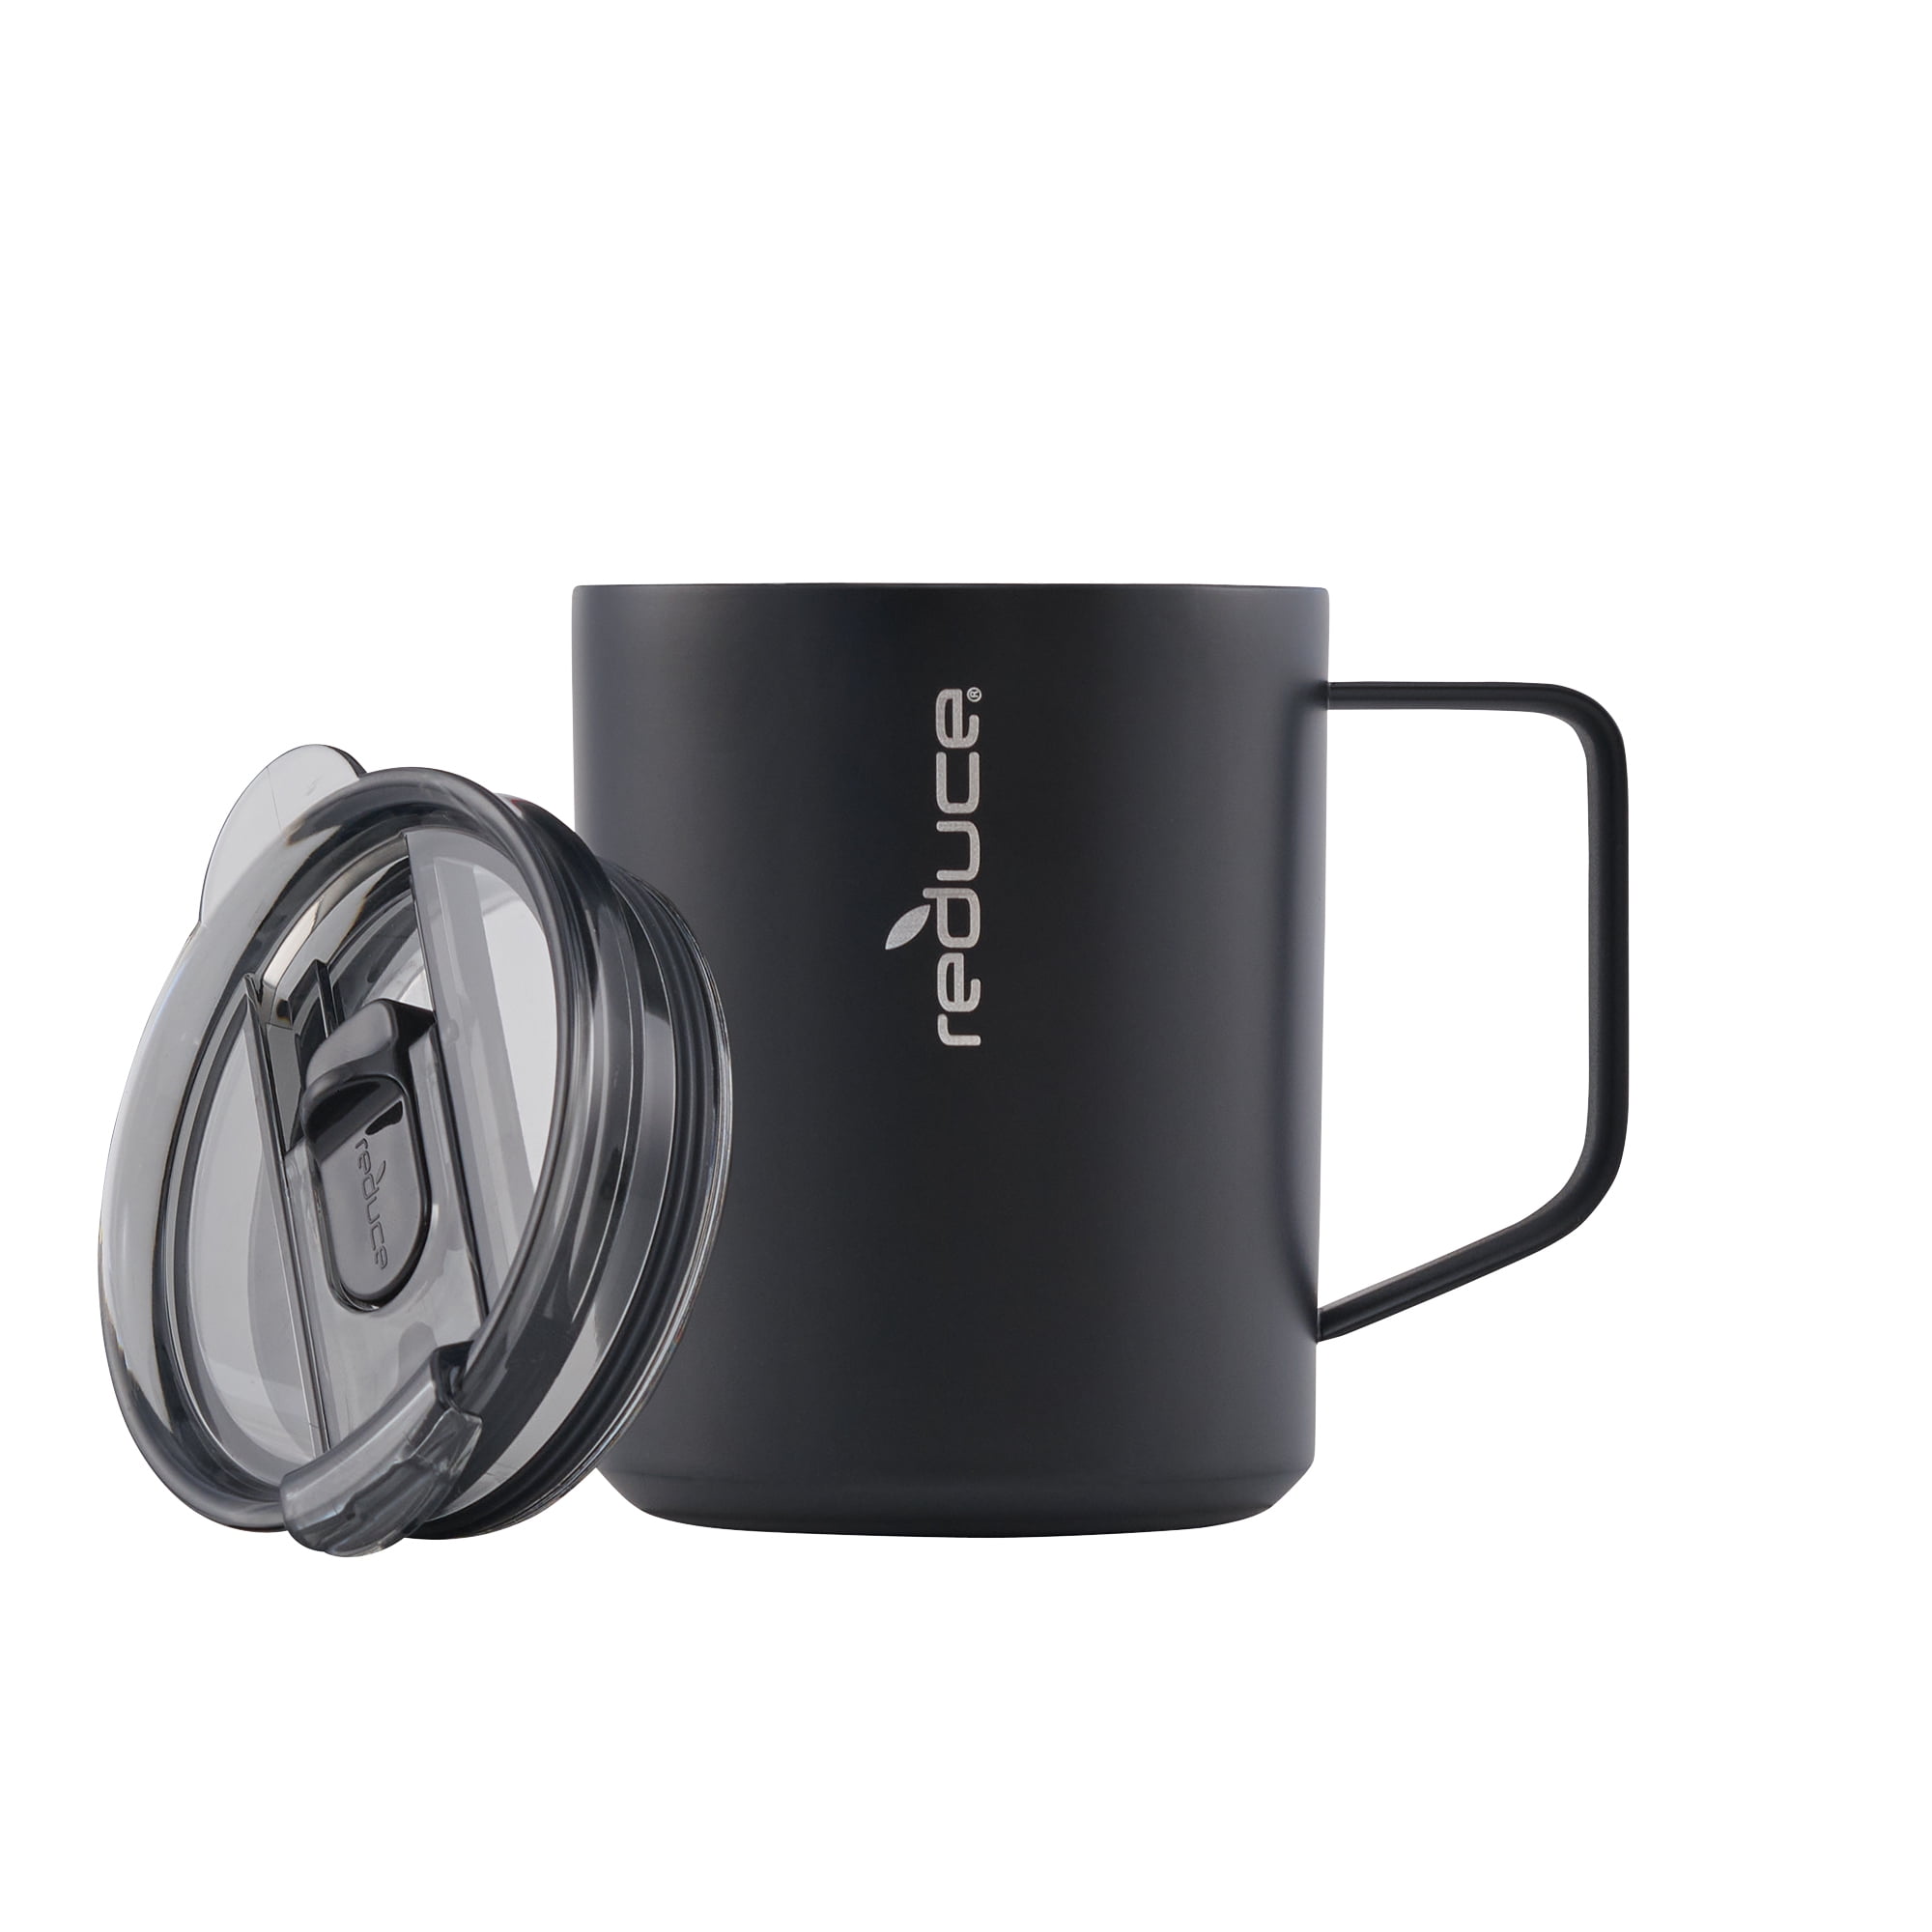 Reduce Thermal Coffee Mug with Lid & Handle 14oz Light Gray